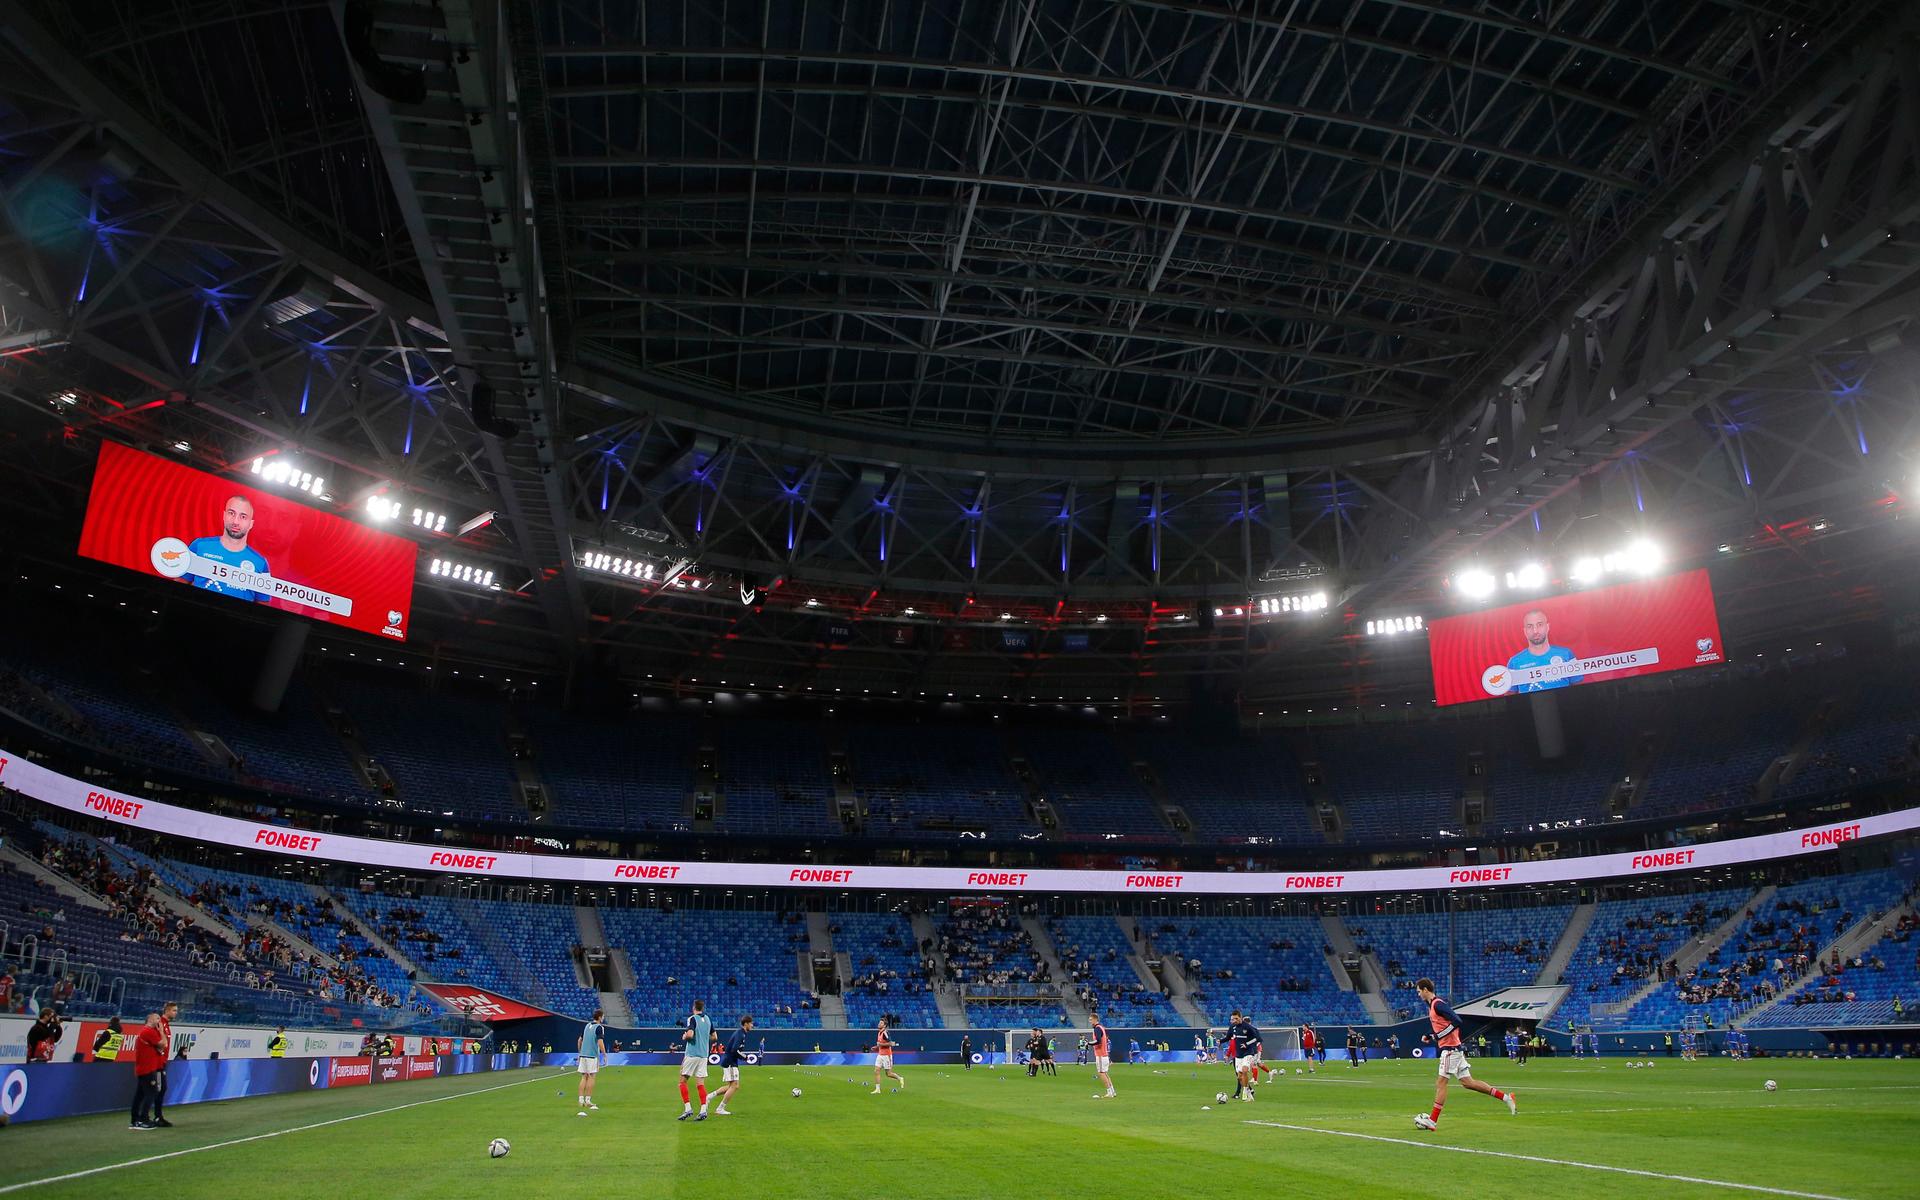 Champions League-finalen är planerad att spelas på Gazprom arena i St Petersburg 28 maj. 